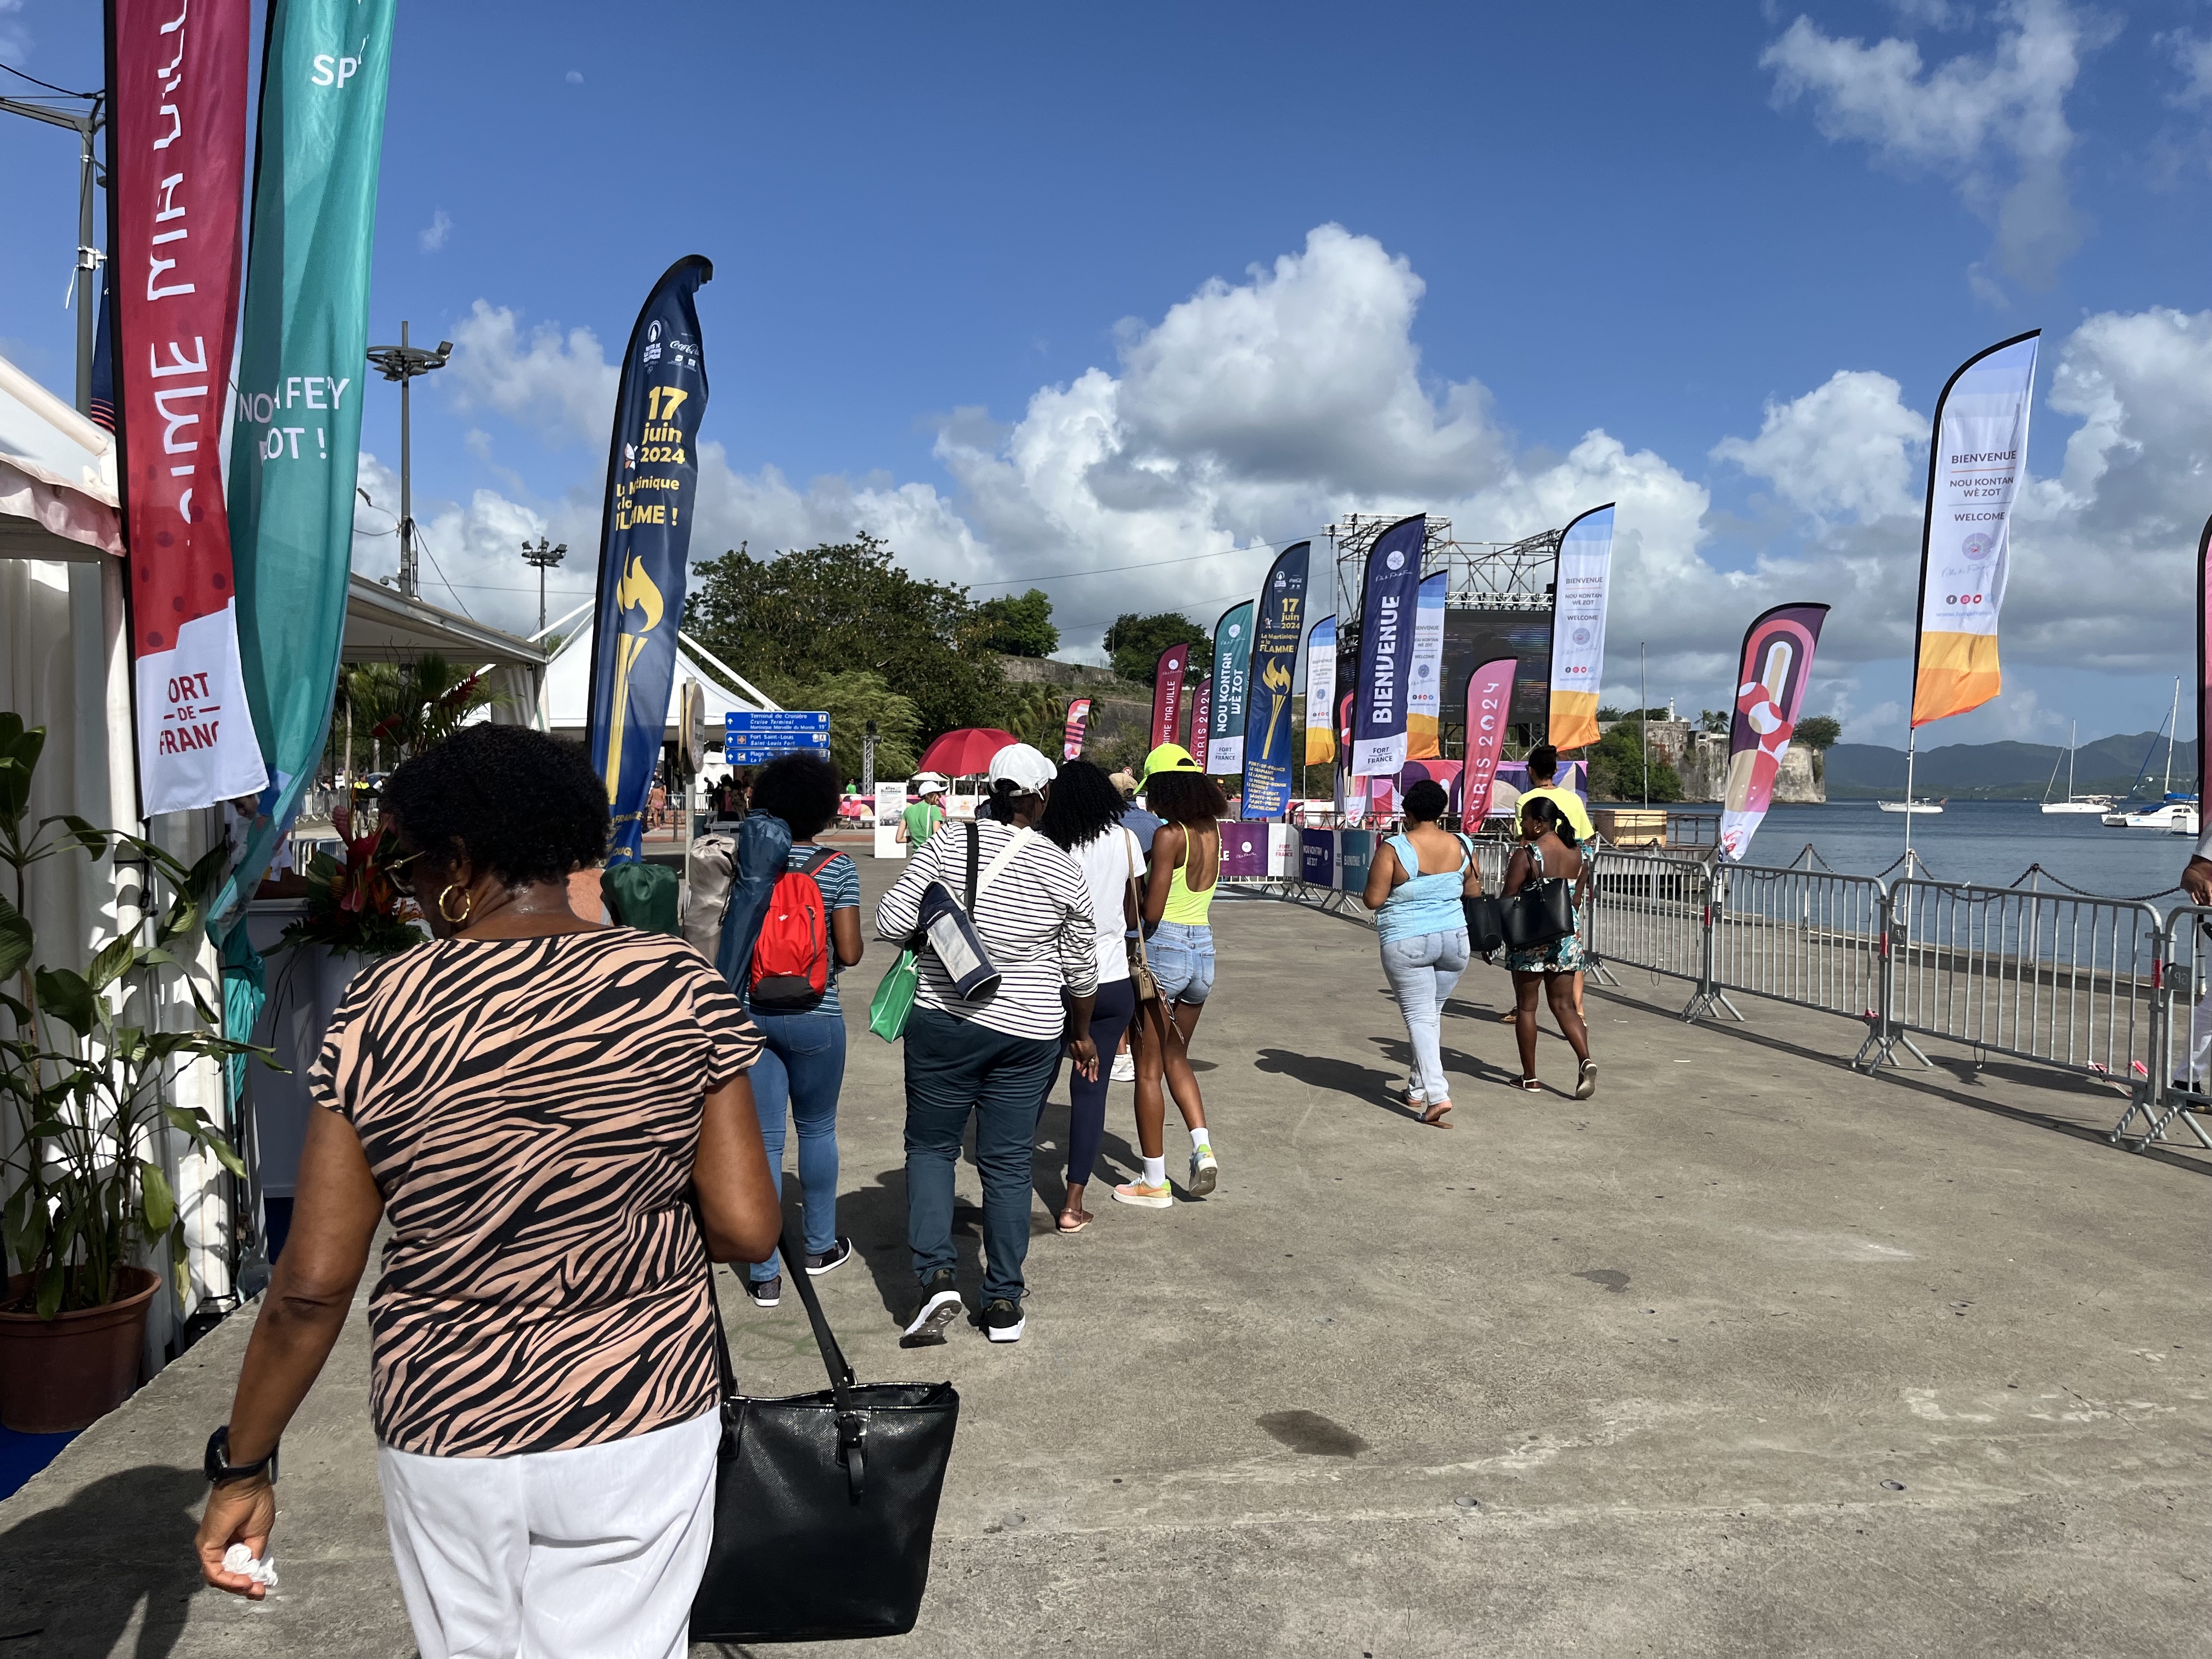     Fort-de-France s’anime en attendant l’arrivée de la Flamme Olympique en Martinique 

